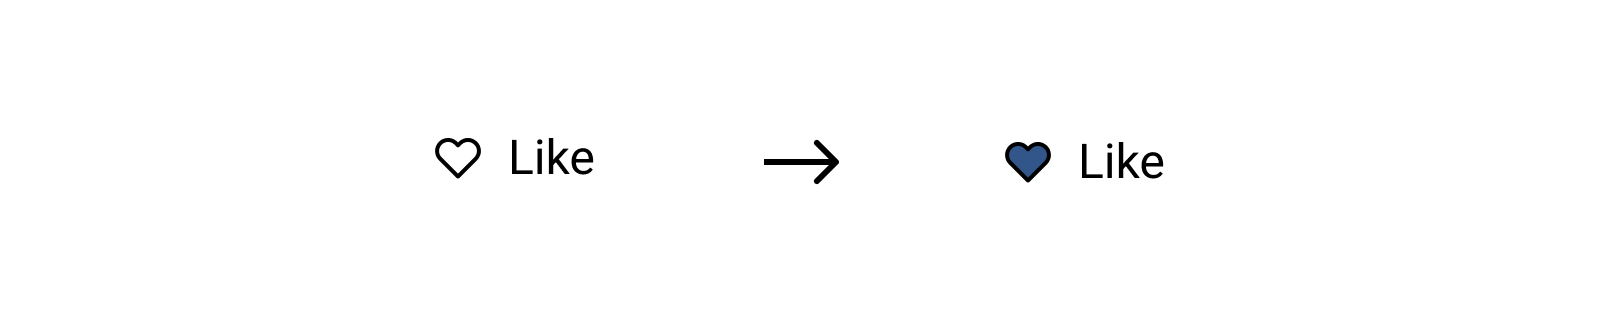 「色を反転させる」形のフォーカスインジケーター (例3)